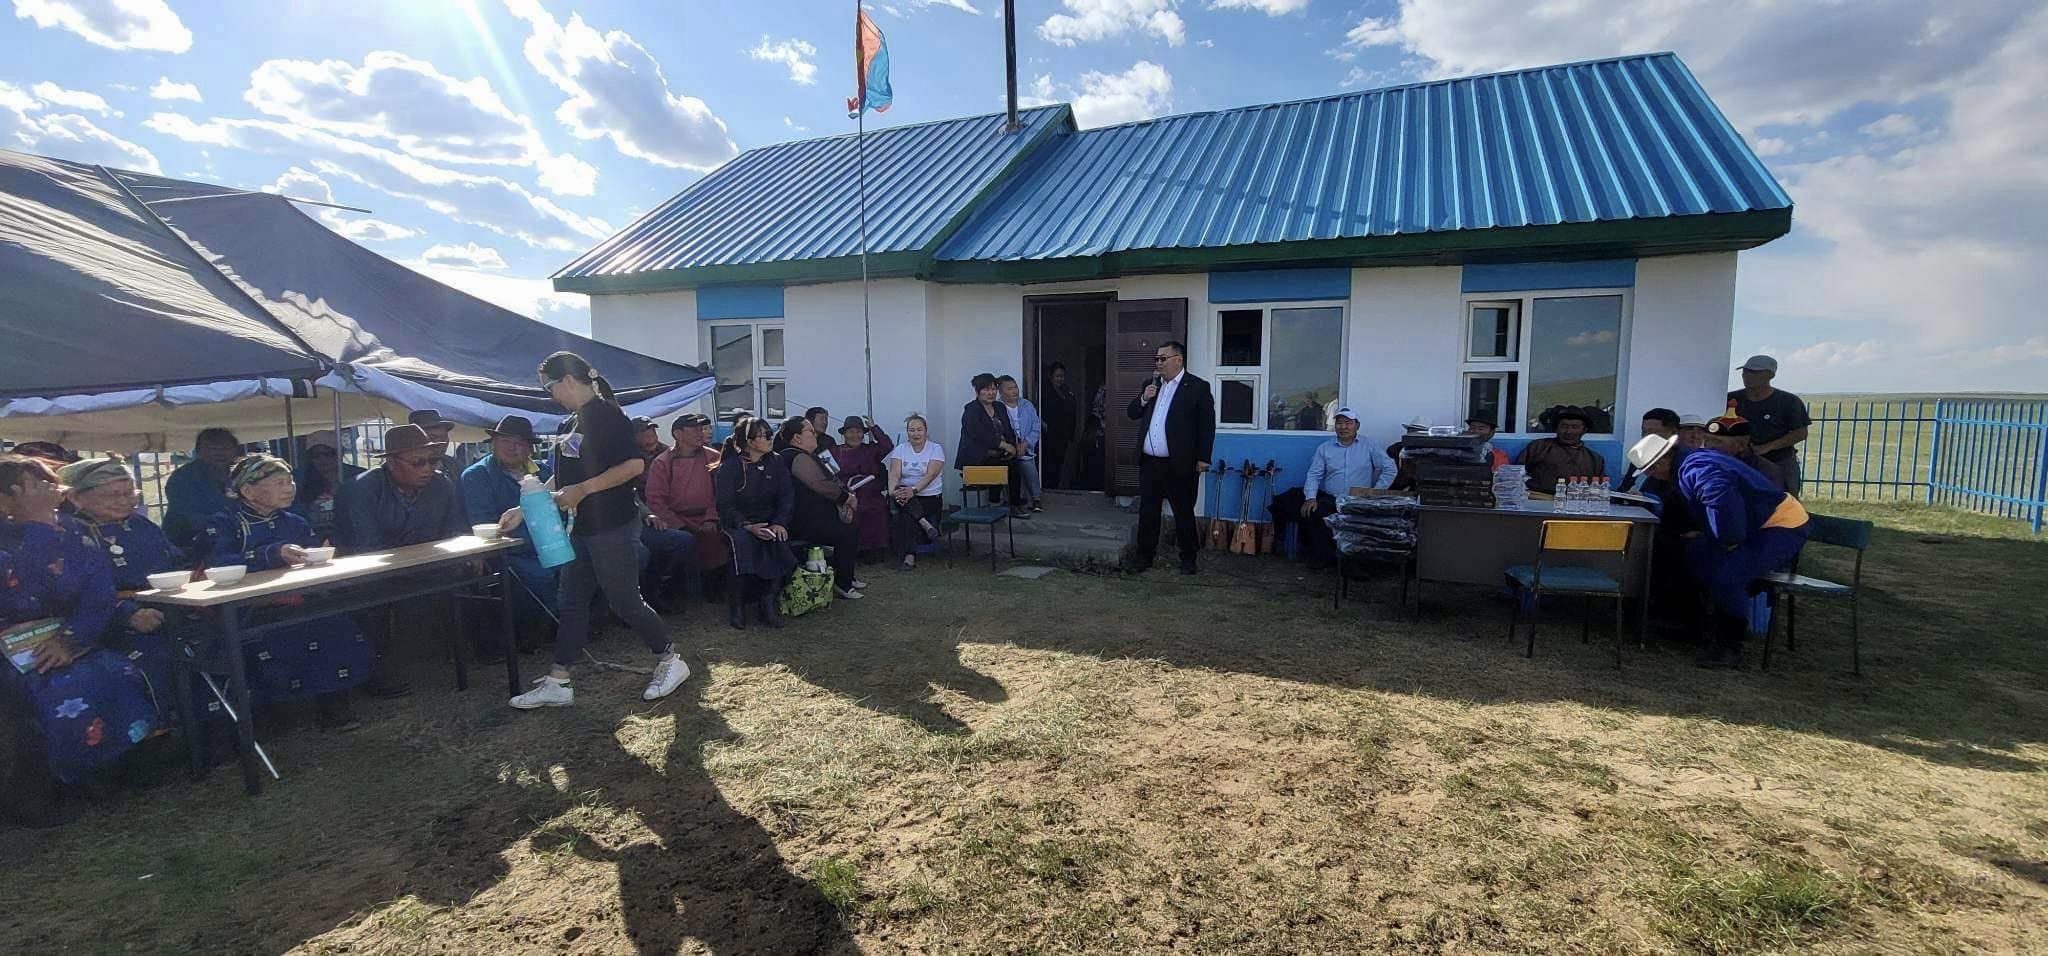 Ц.Туваан гишүүн Төв аймгийн Баянцагаан сумын 1 дүгээр багийн өдөрлөгт оролцлоо